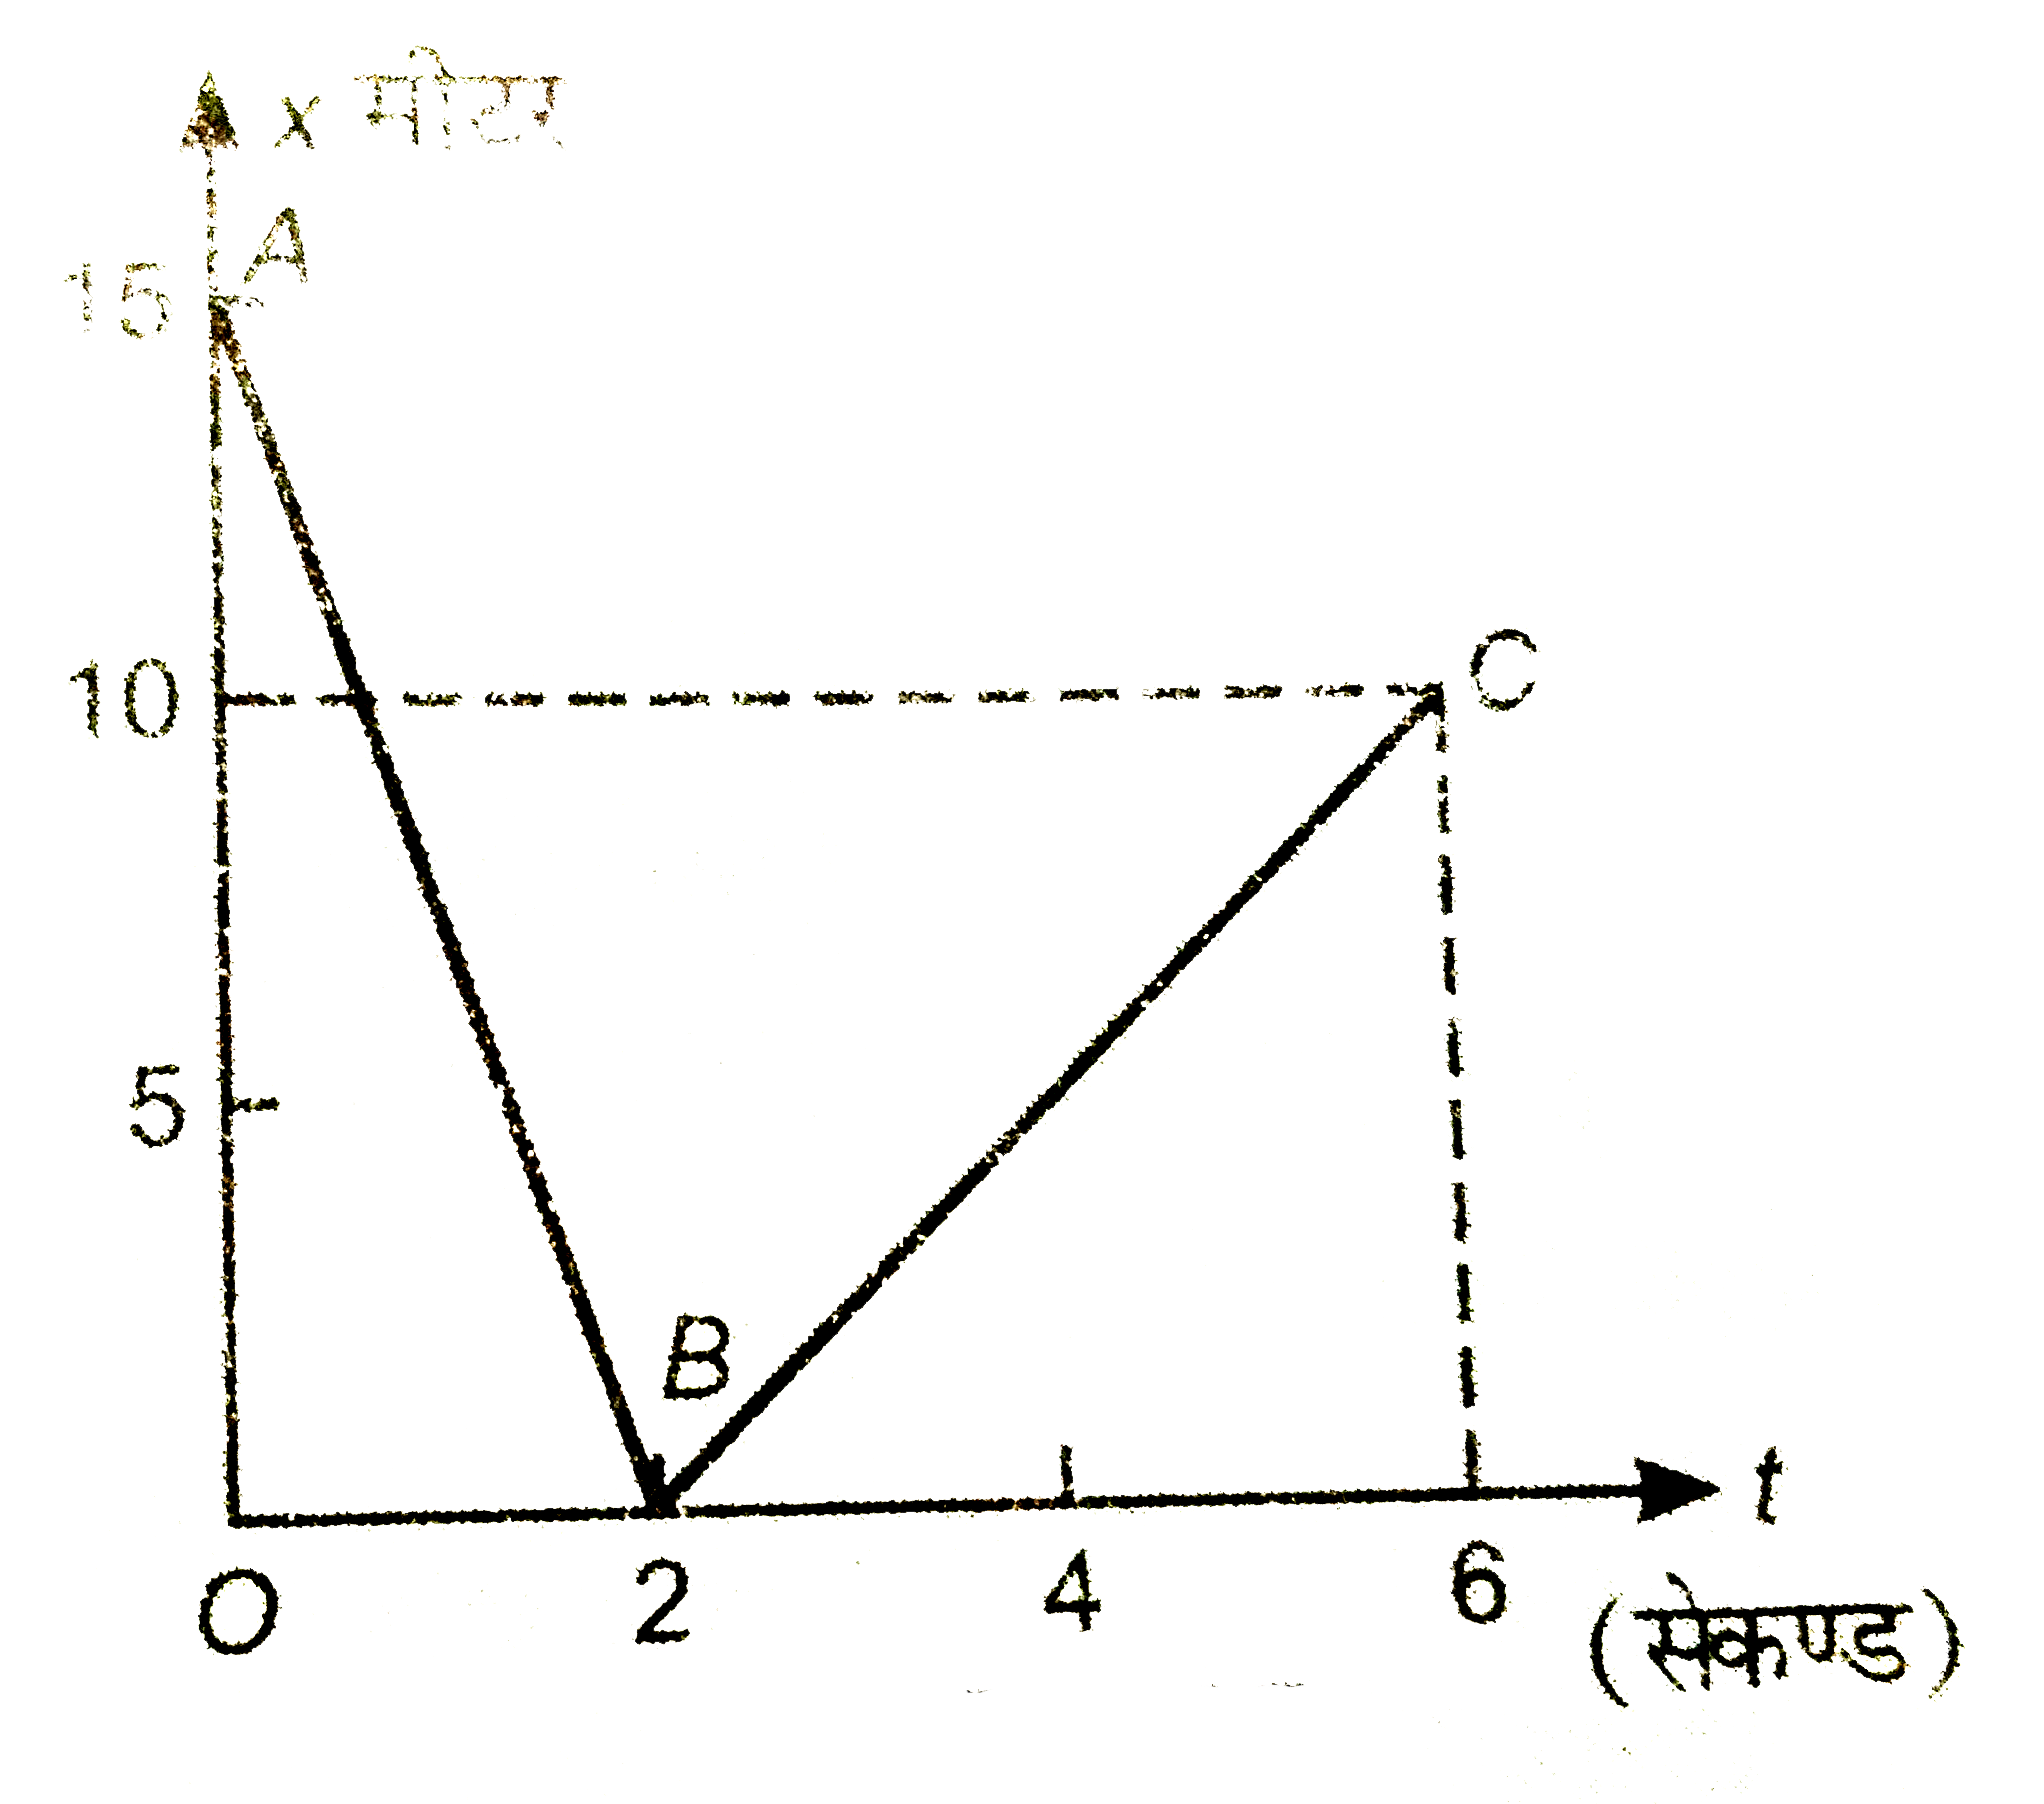 X -अक्ष पर गतिमान एक कण का स्थिति समय (x-t) ग्राफ चित्र में प्रदर्शित है। ज्ञात कीजिए-   (i) t=0 सेकण्ड से t=2सेकण्ड तक के समयन्तराल में कण का विस्थापन, तय दूरी, औसत चाल, औसत वेग।     (i) t=0 सेकण्ड से t=6 सेकण्ड तक के समयान्तराल में कण का विस्थापन, तय दूरी, औसत चाल एवं औसत वेग।   (iii) t=1 सेकण्ड तथा t=3 सेकण्ड पर कण का वेग।